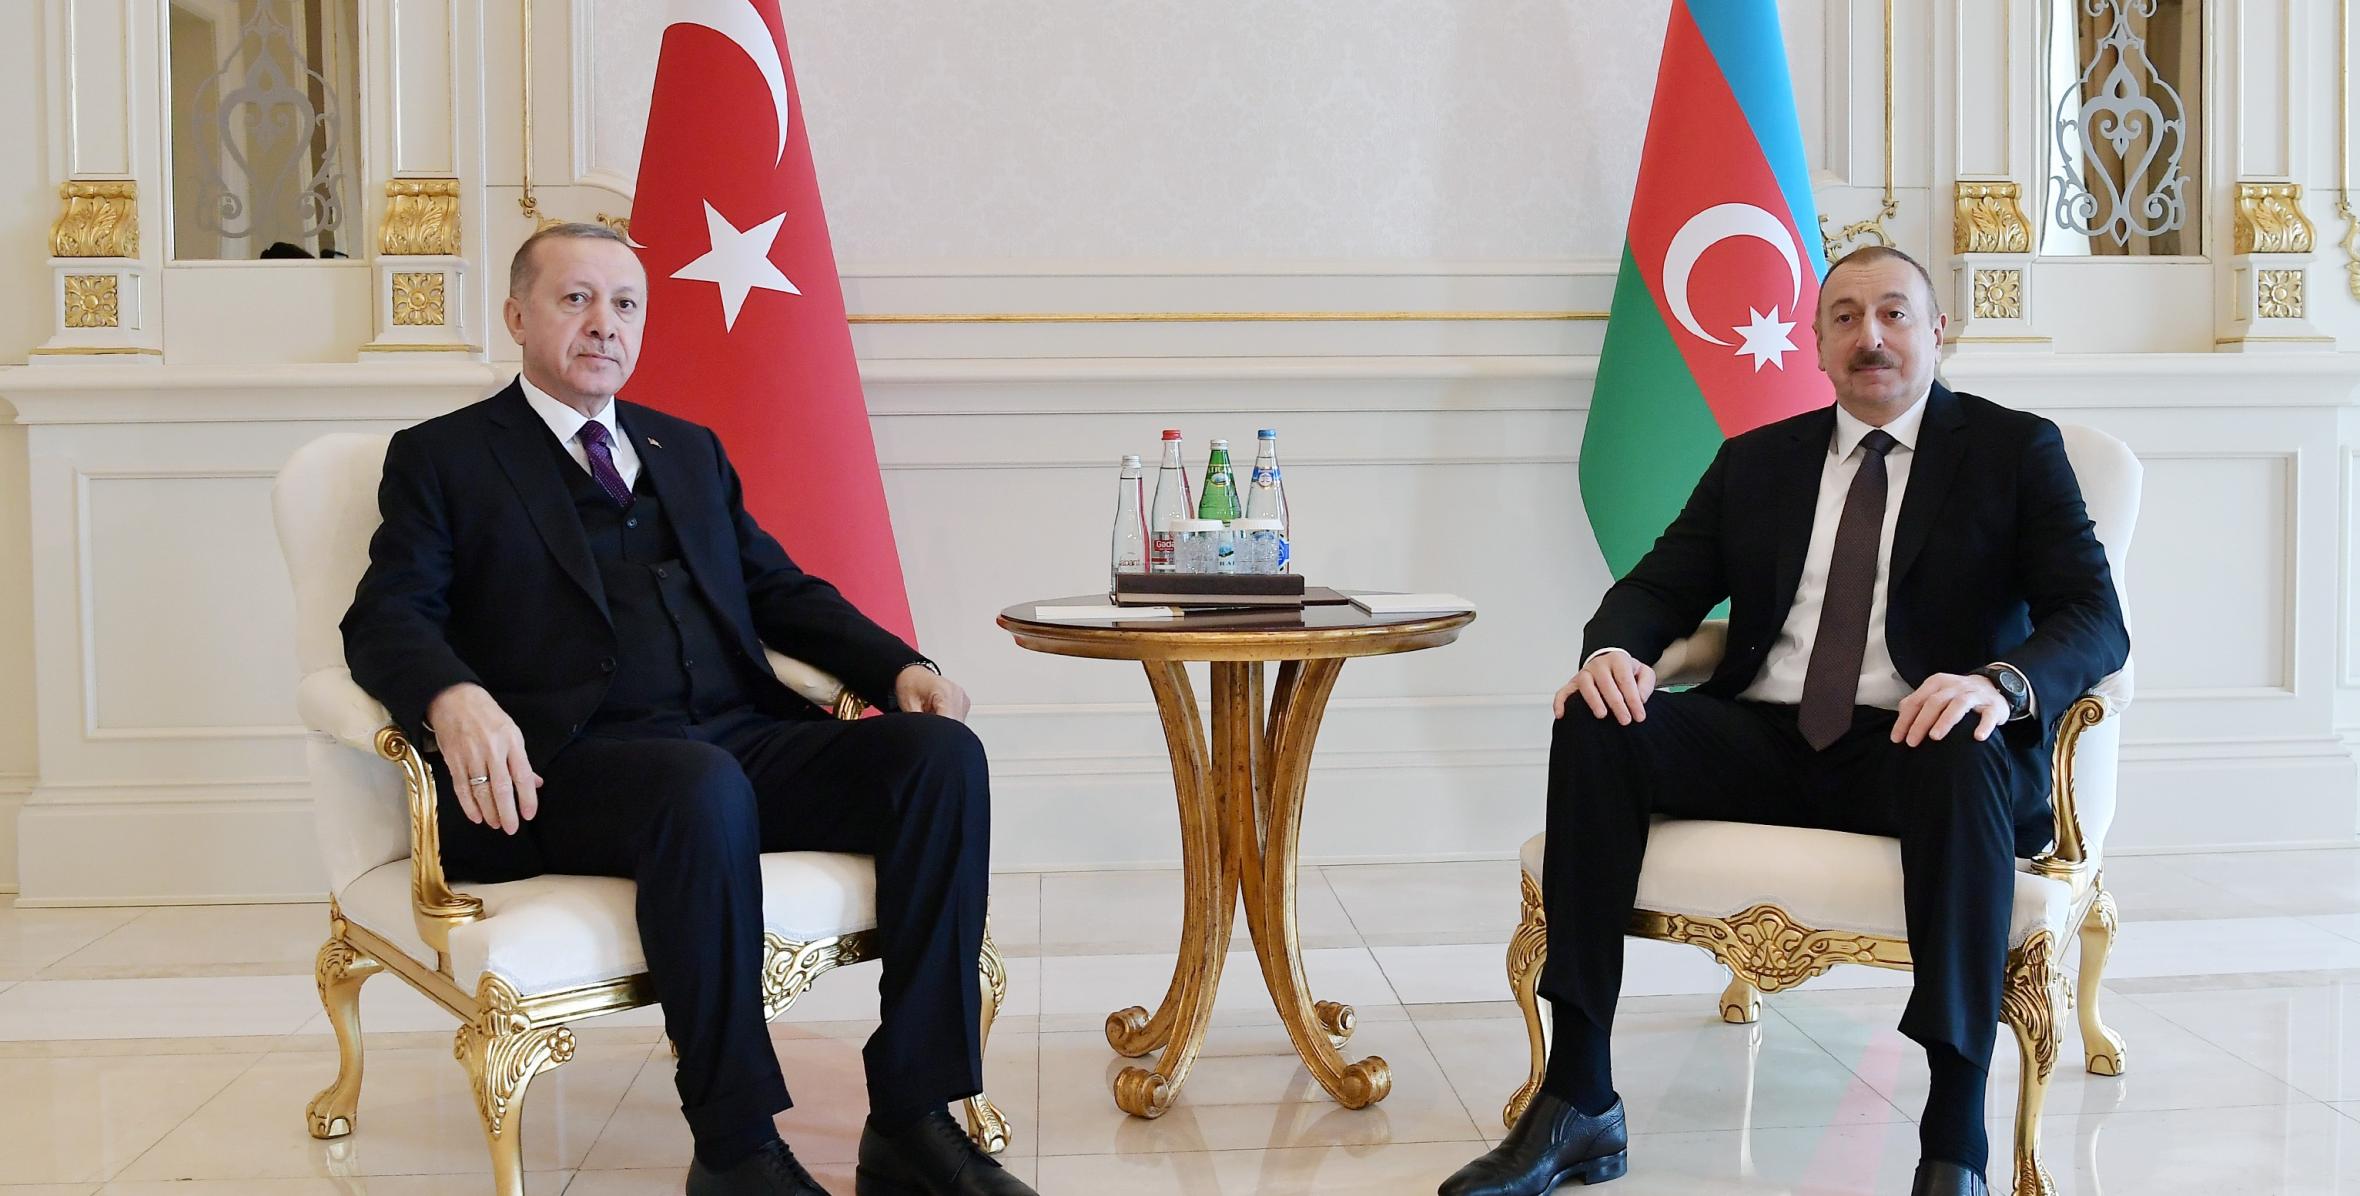 Состоялась встреча Ильхама Алиева и Президента Турции Реджепа Тайипа Эрдогана один на один